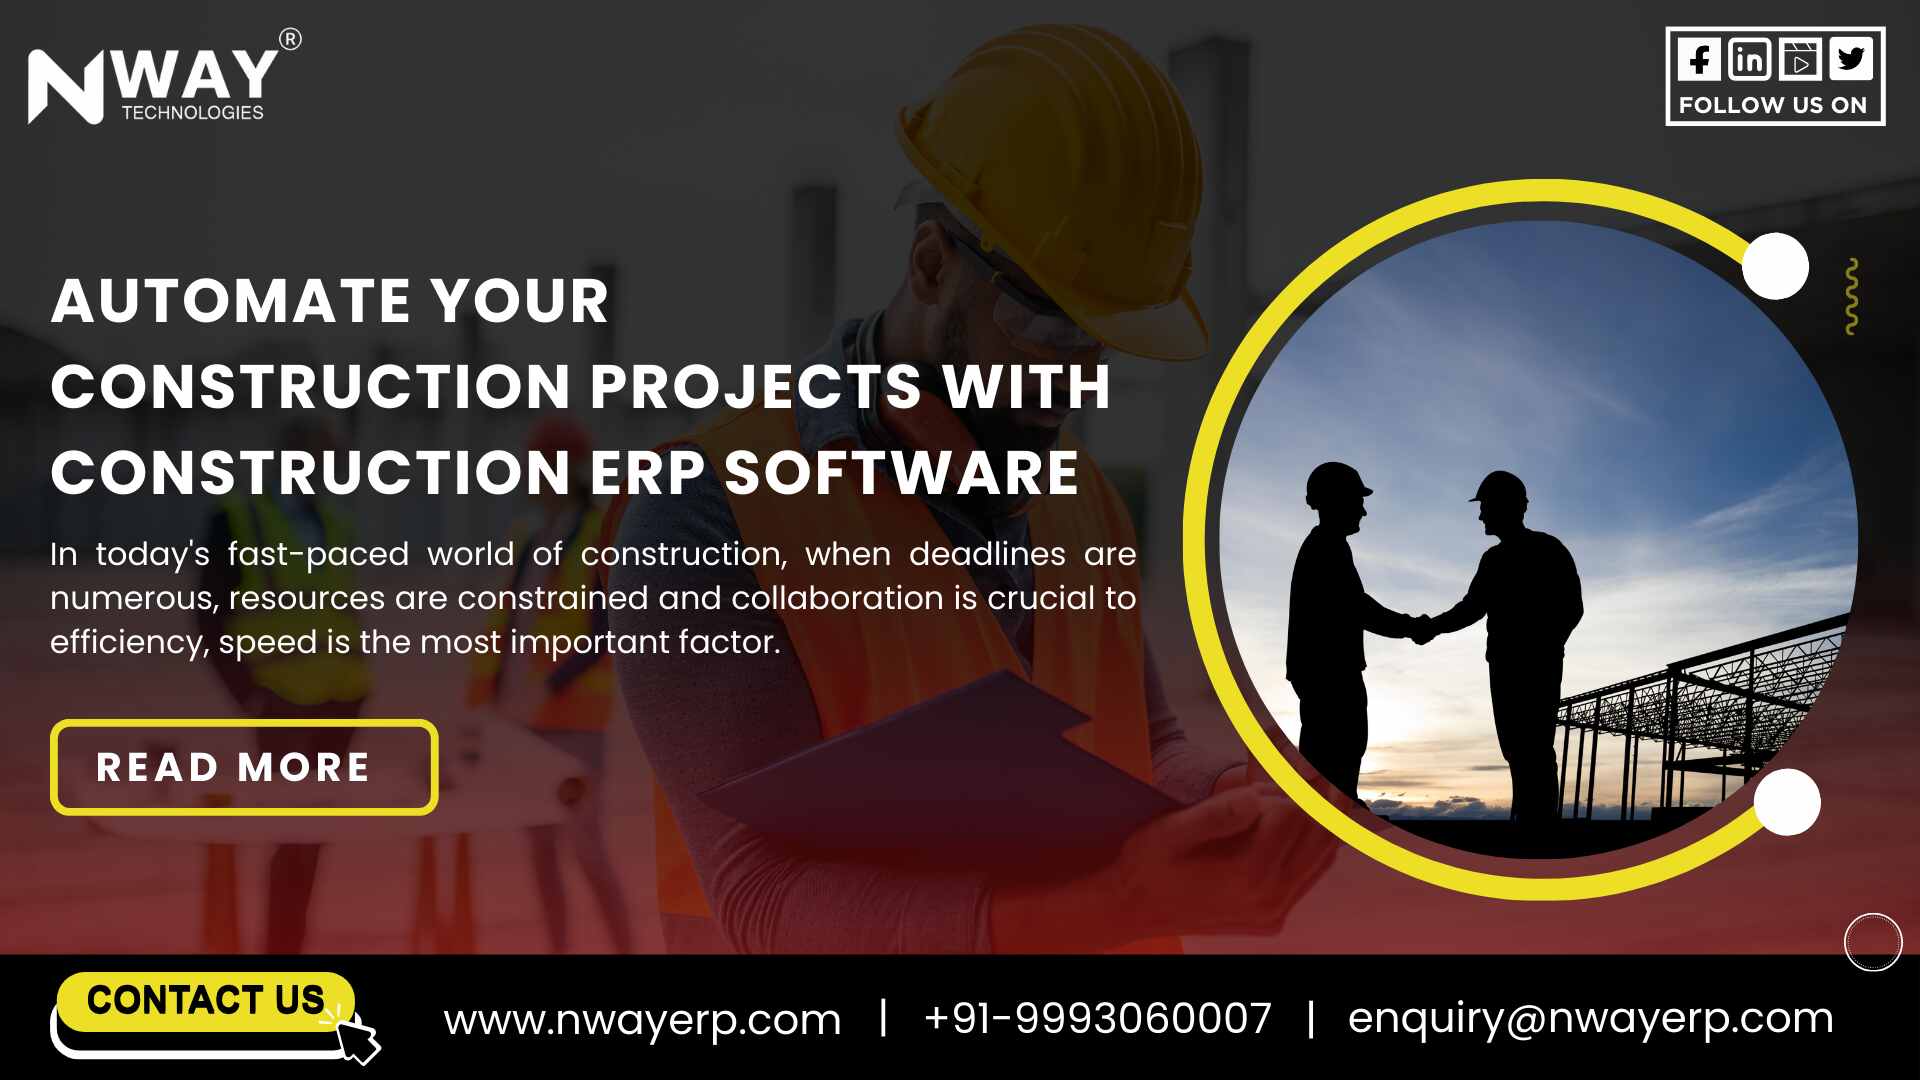 Construction ERP Software